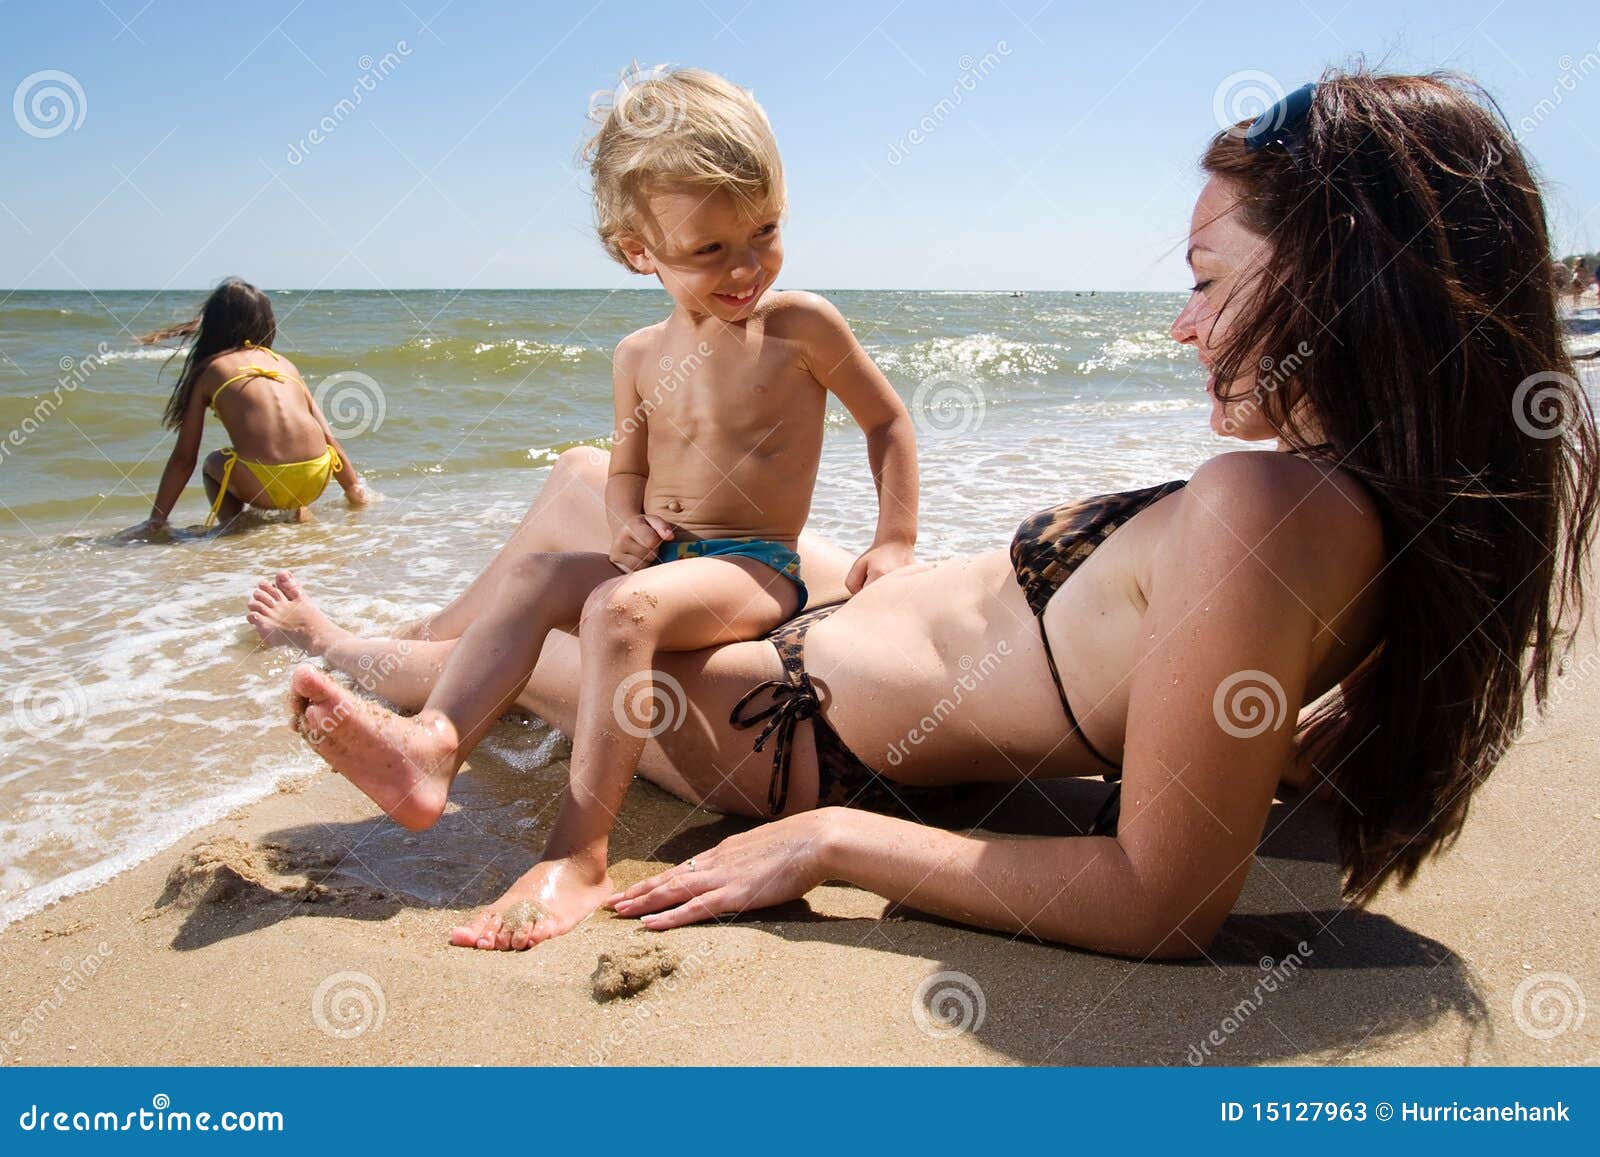 рассказы голая мама на пляже фото 25